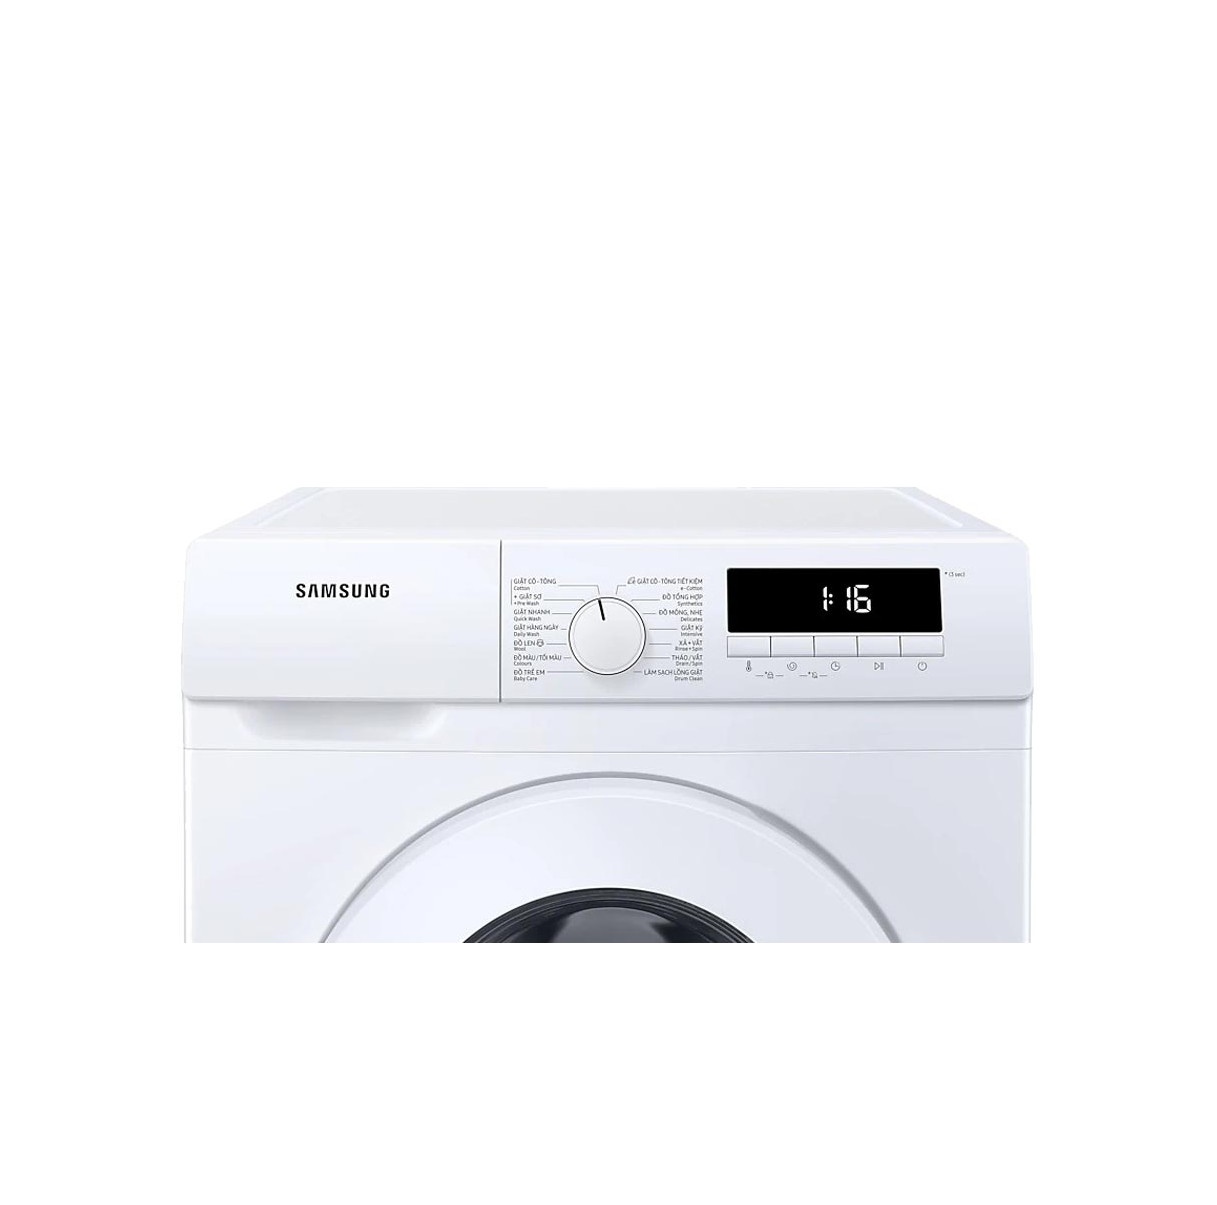 Máy giặt Samsung cửa trước Digital Inverter 9kg WW90T3040WW/SV Model 2020 - Hàng chính hãng (chỉ giao HCM)